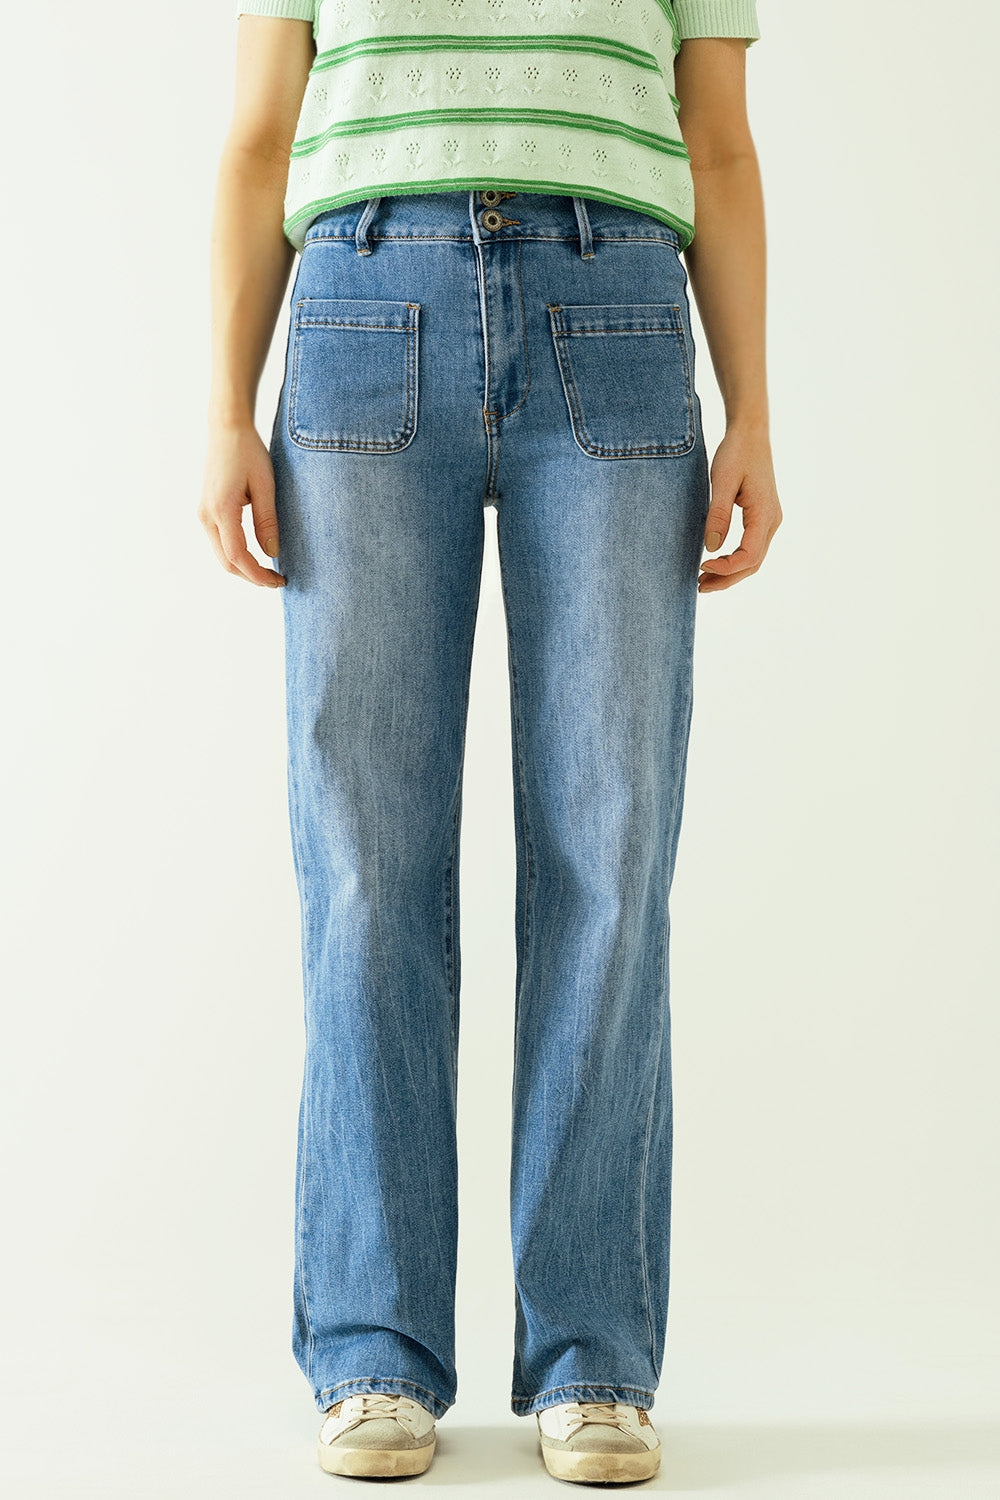 Q2 Jeans a gamba larga con chiusura anteriore con bottoni metallici e tasche anteriori